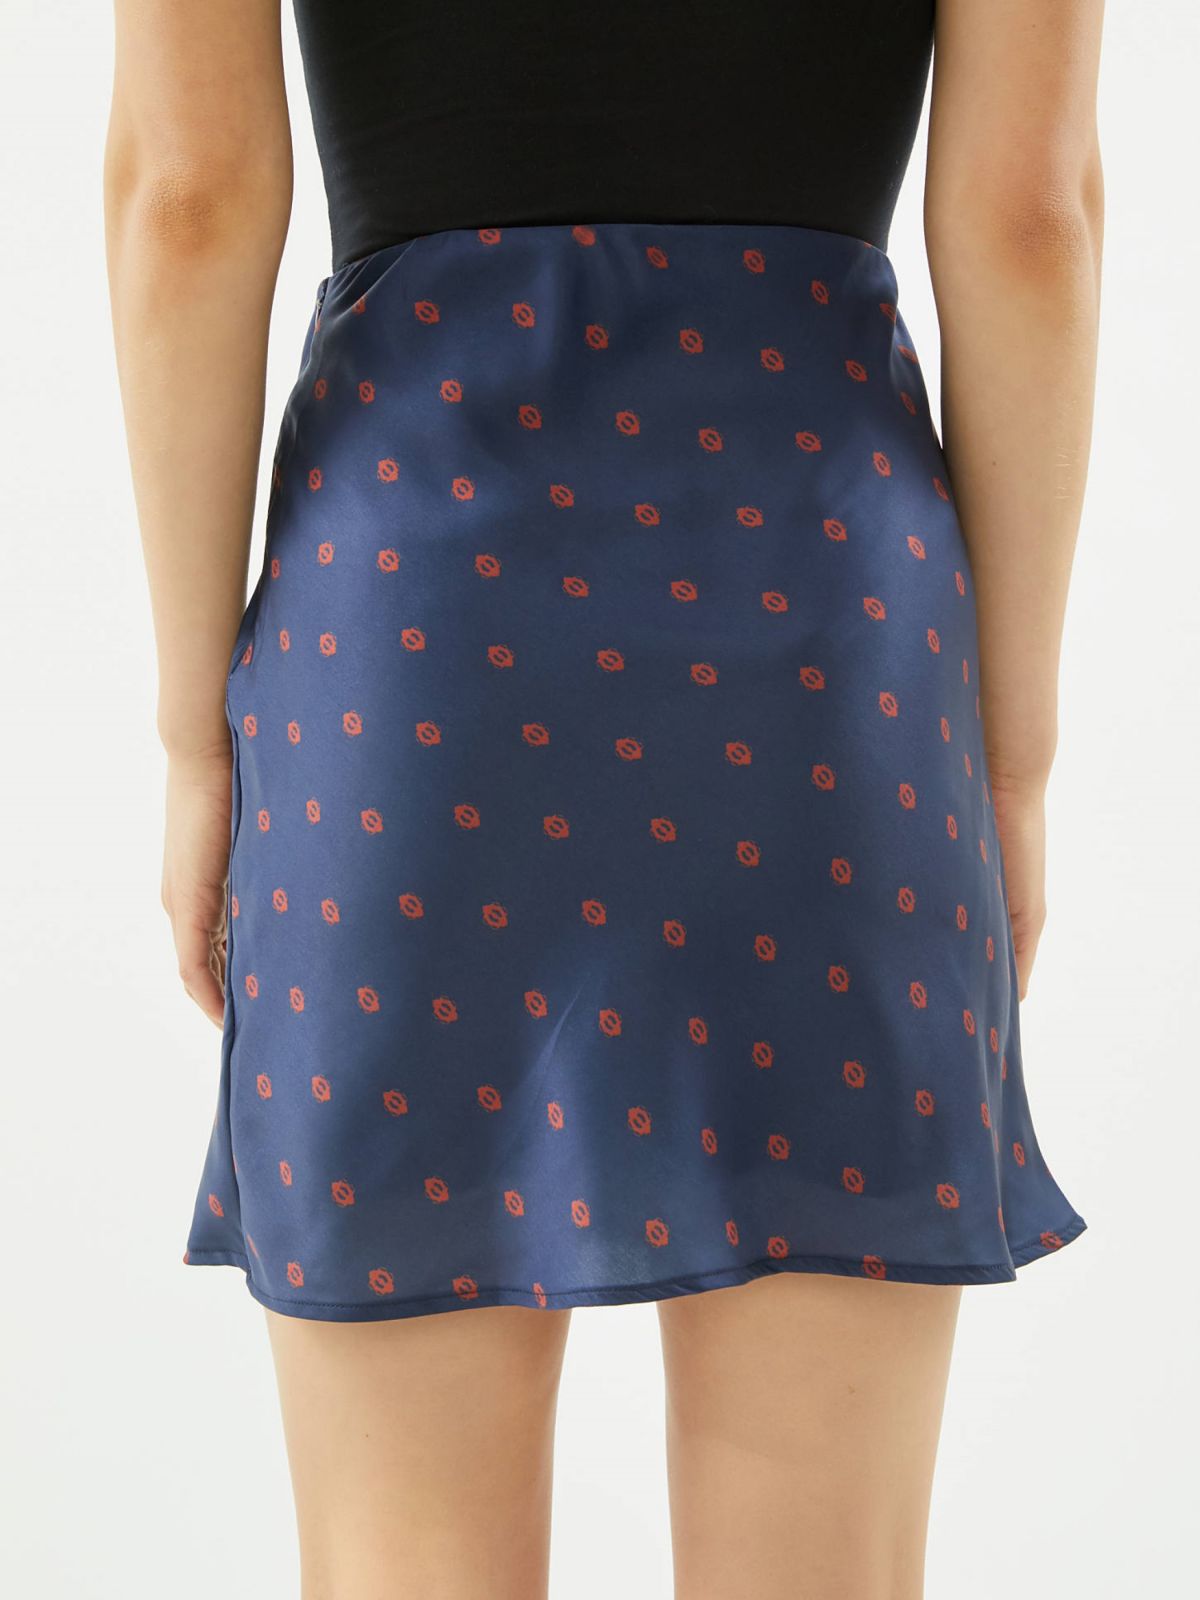  חצאית סאטן מיני בהדפס עיגולים UO של URBAN OUTFITTERS